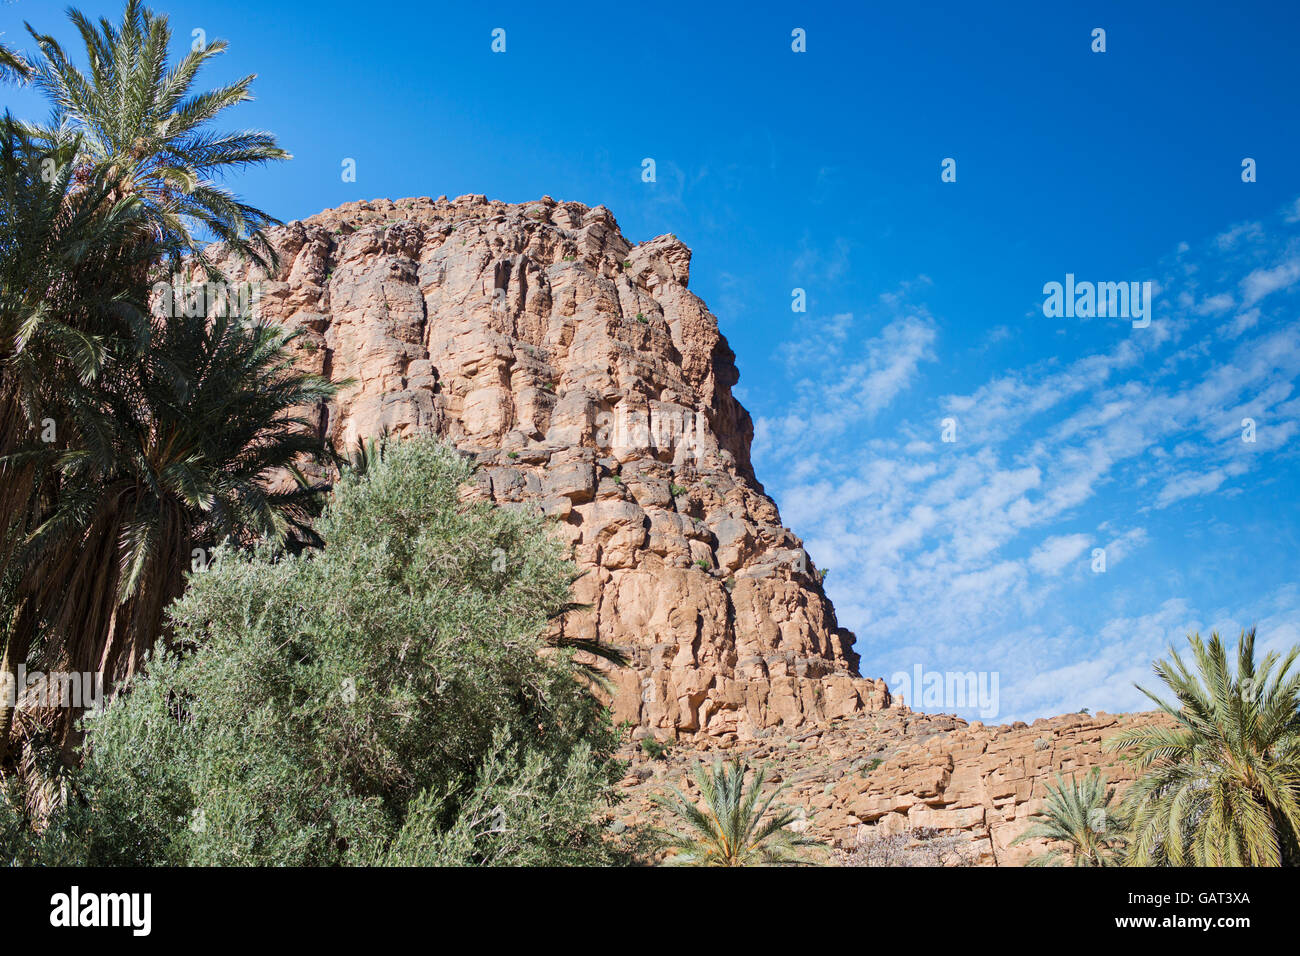 amtoudi gorge in morocco Stock Photo